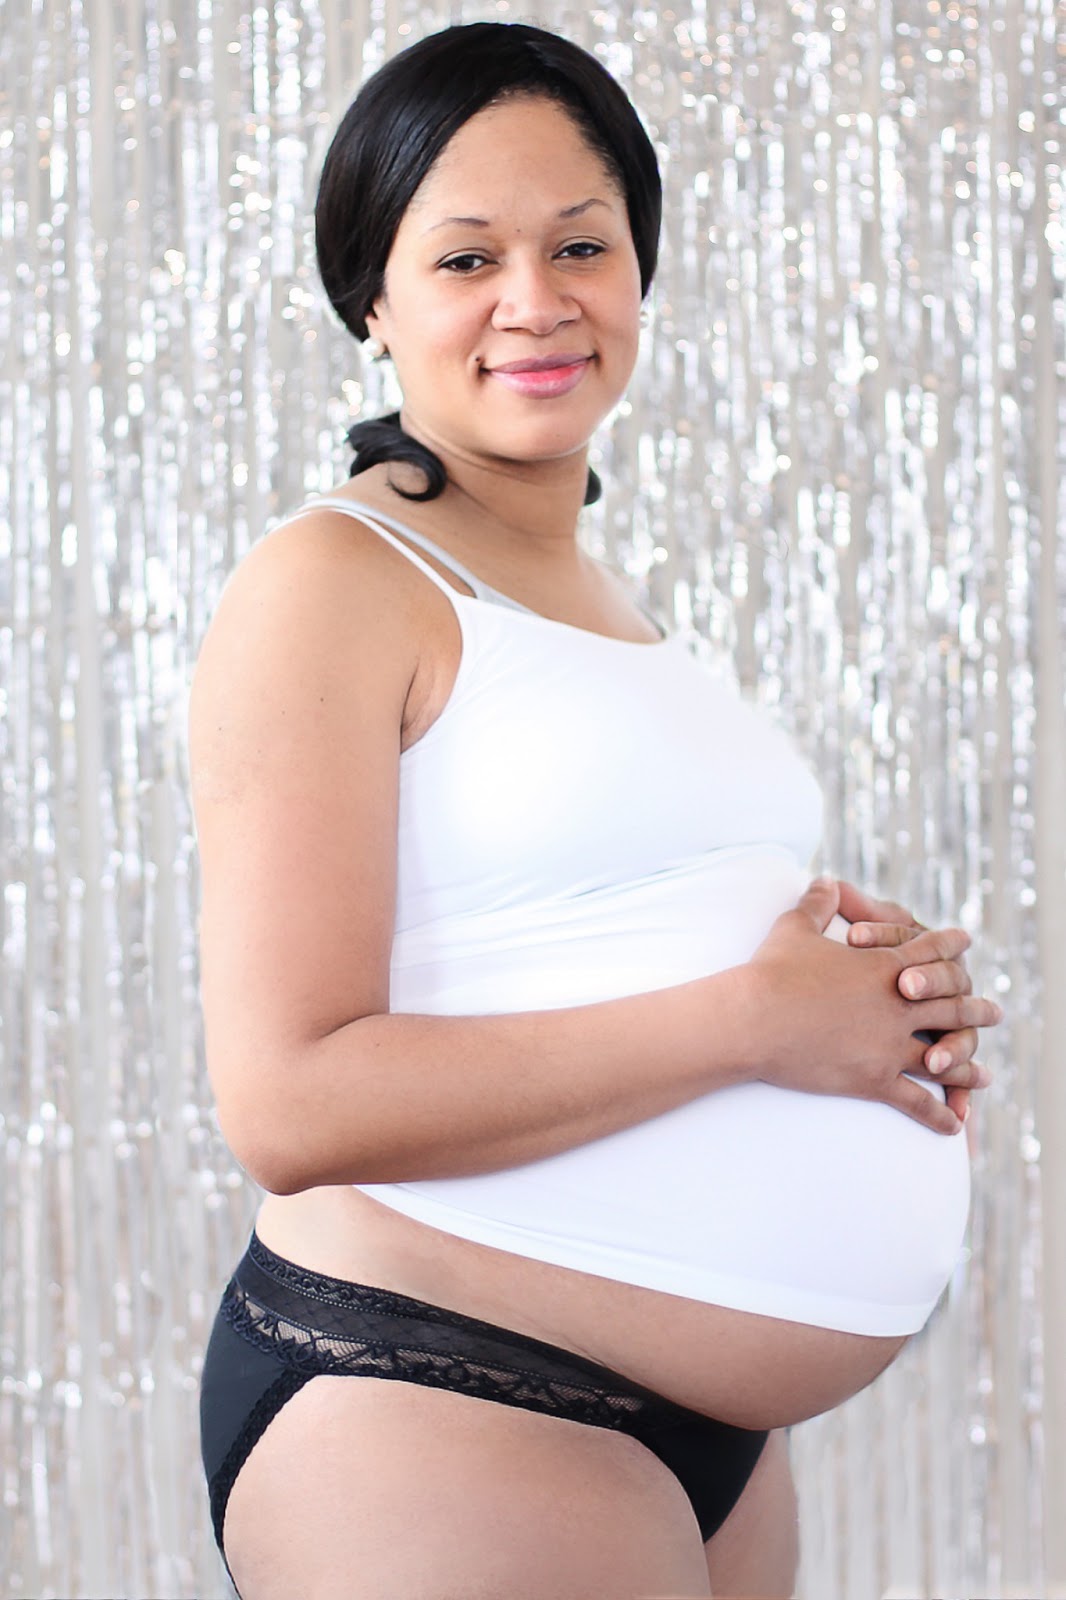 Pregnant In Underwear 107